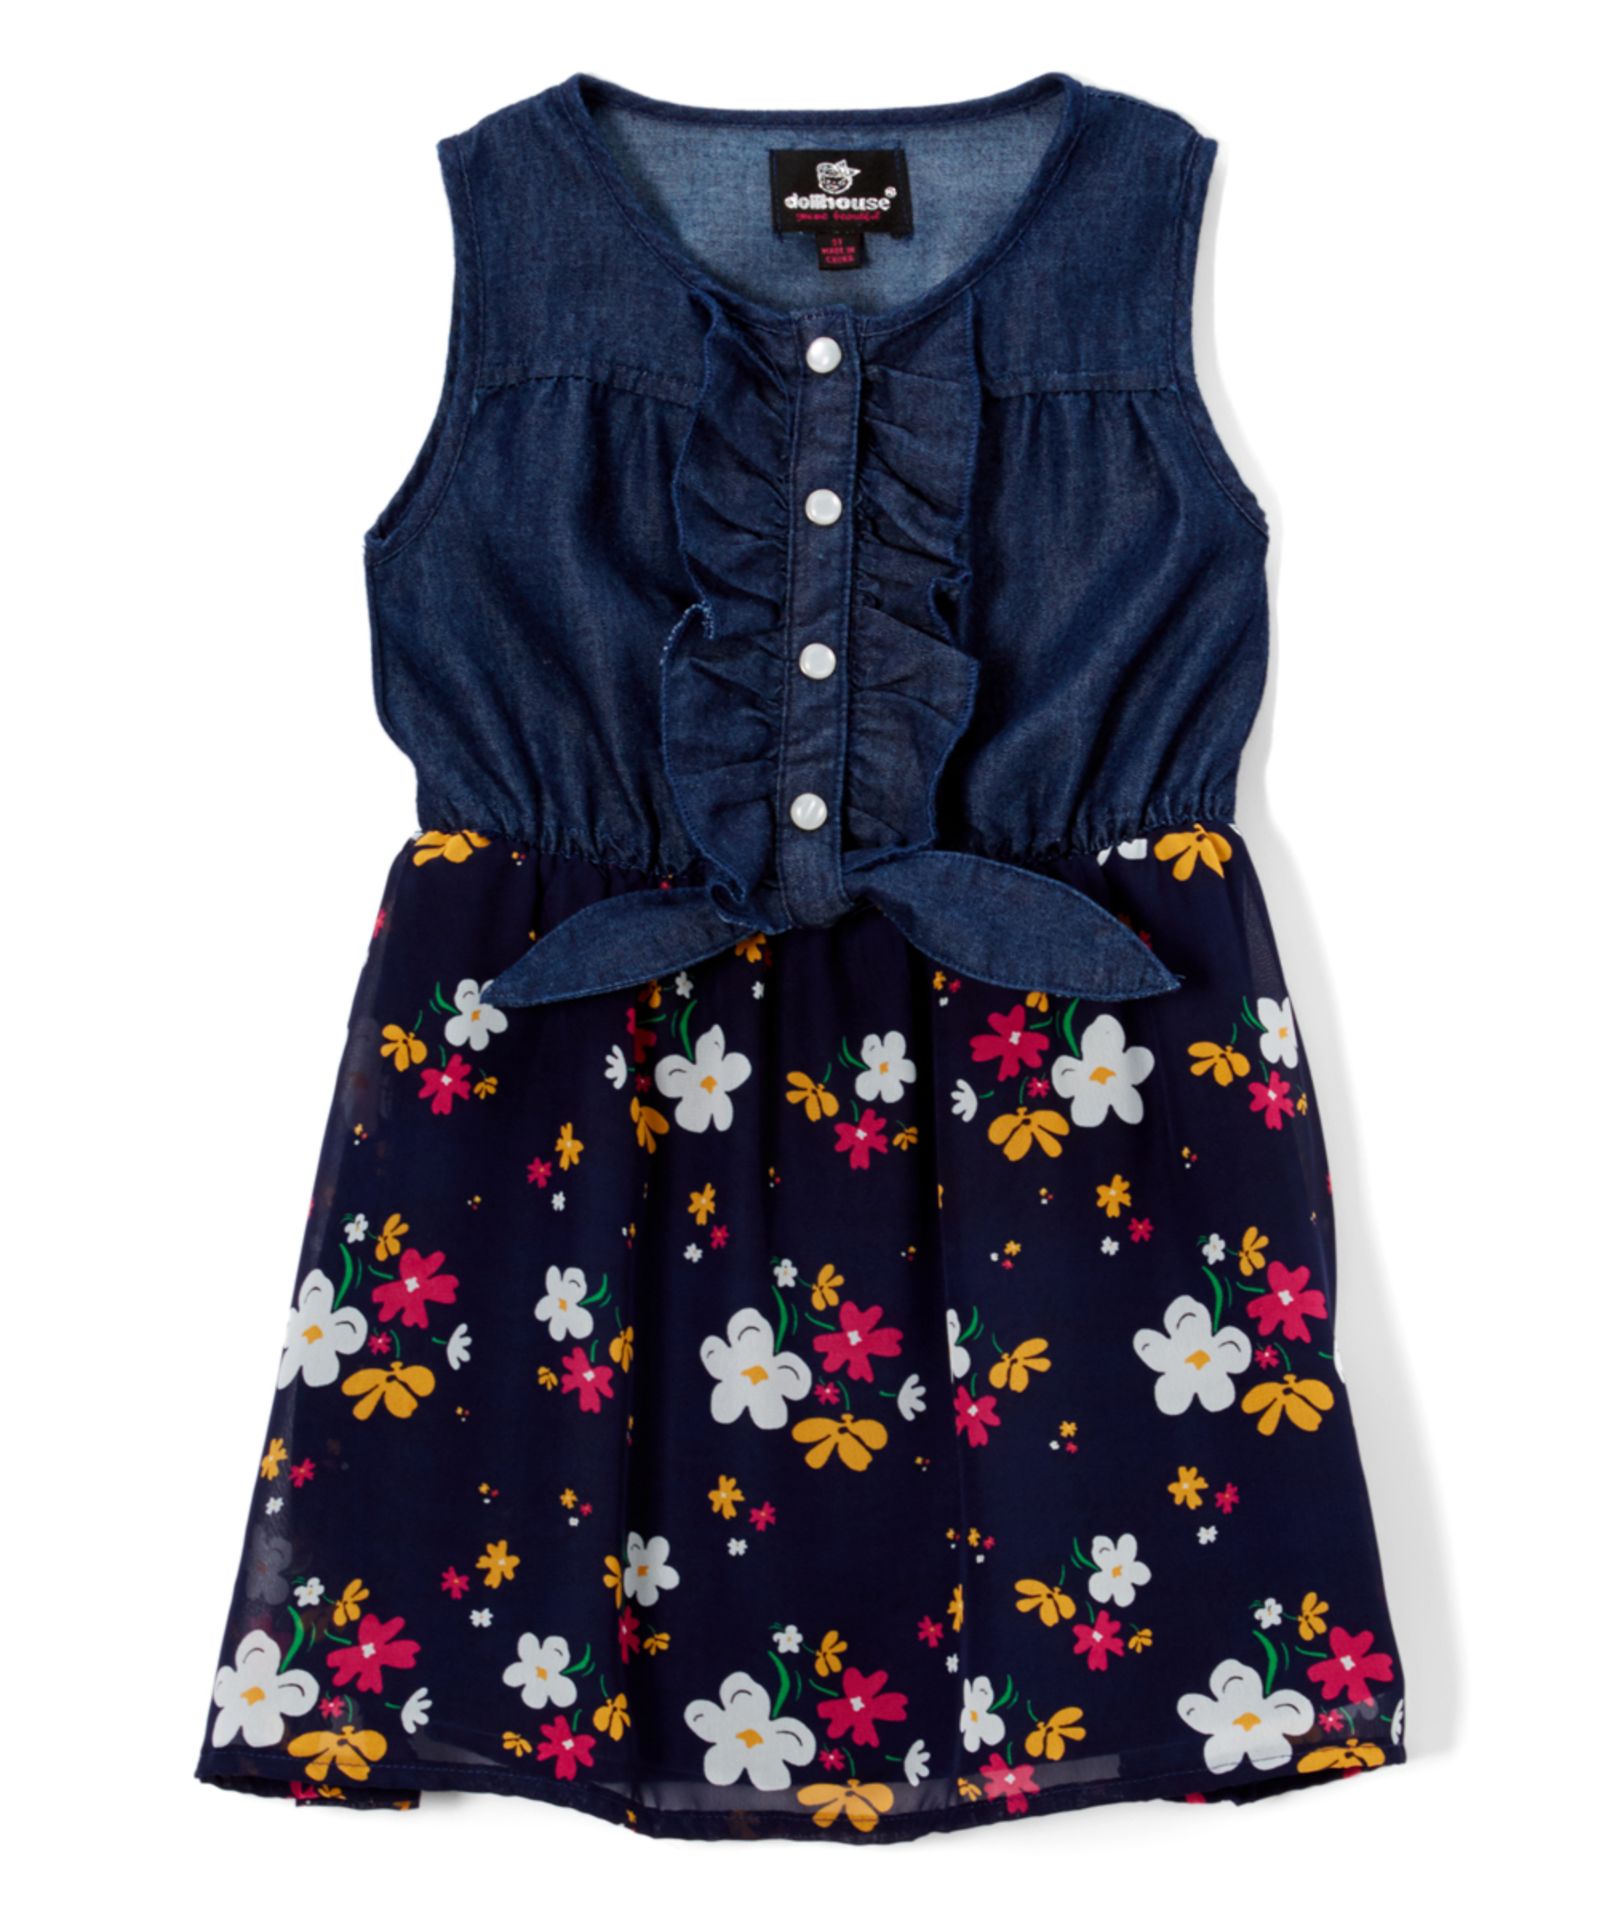 Dark Blue Floral A-Line Dress - Infant